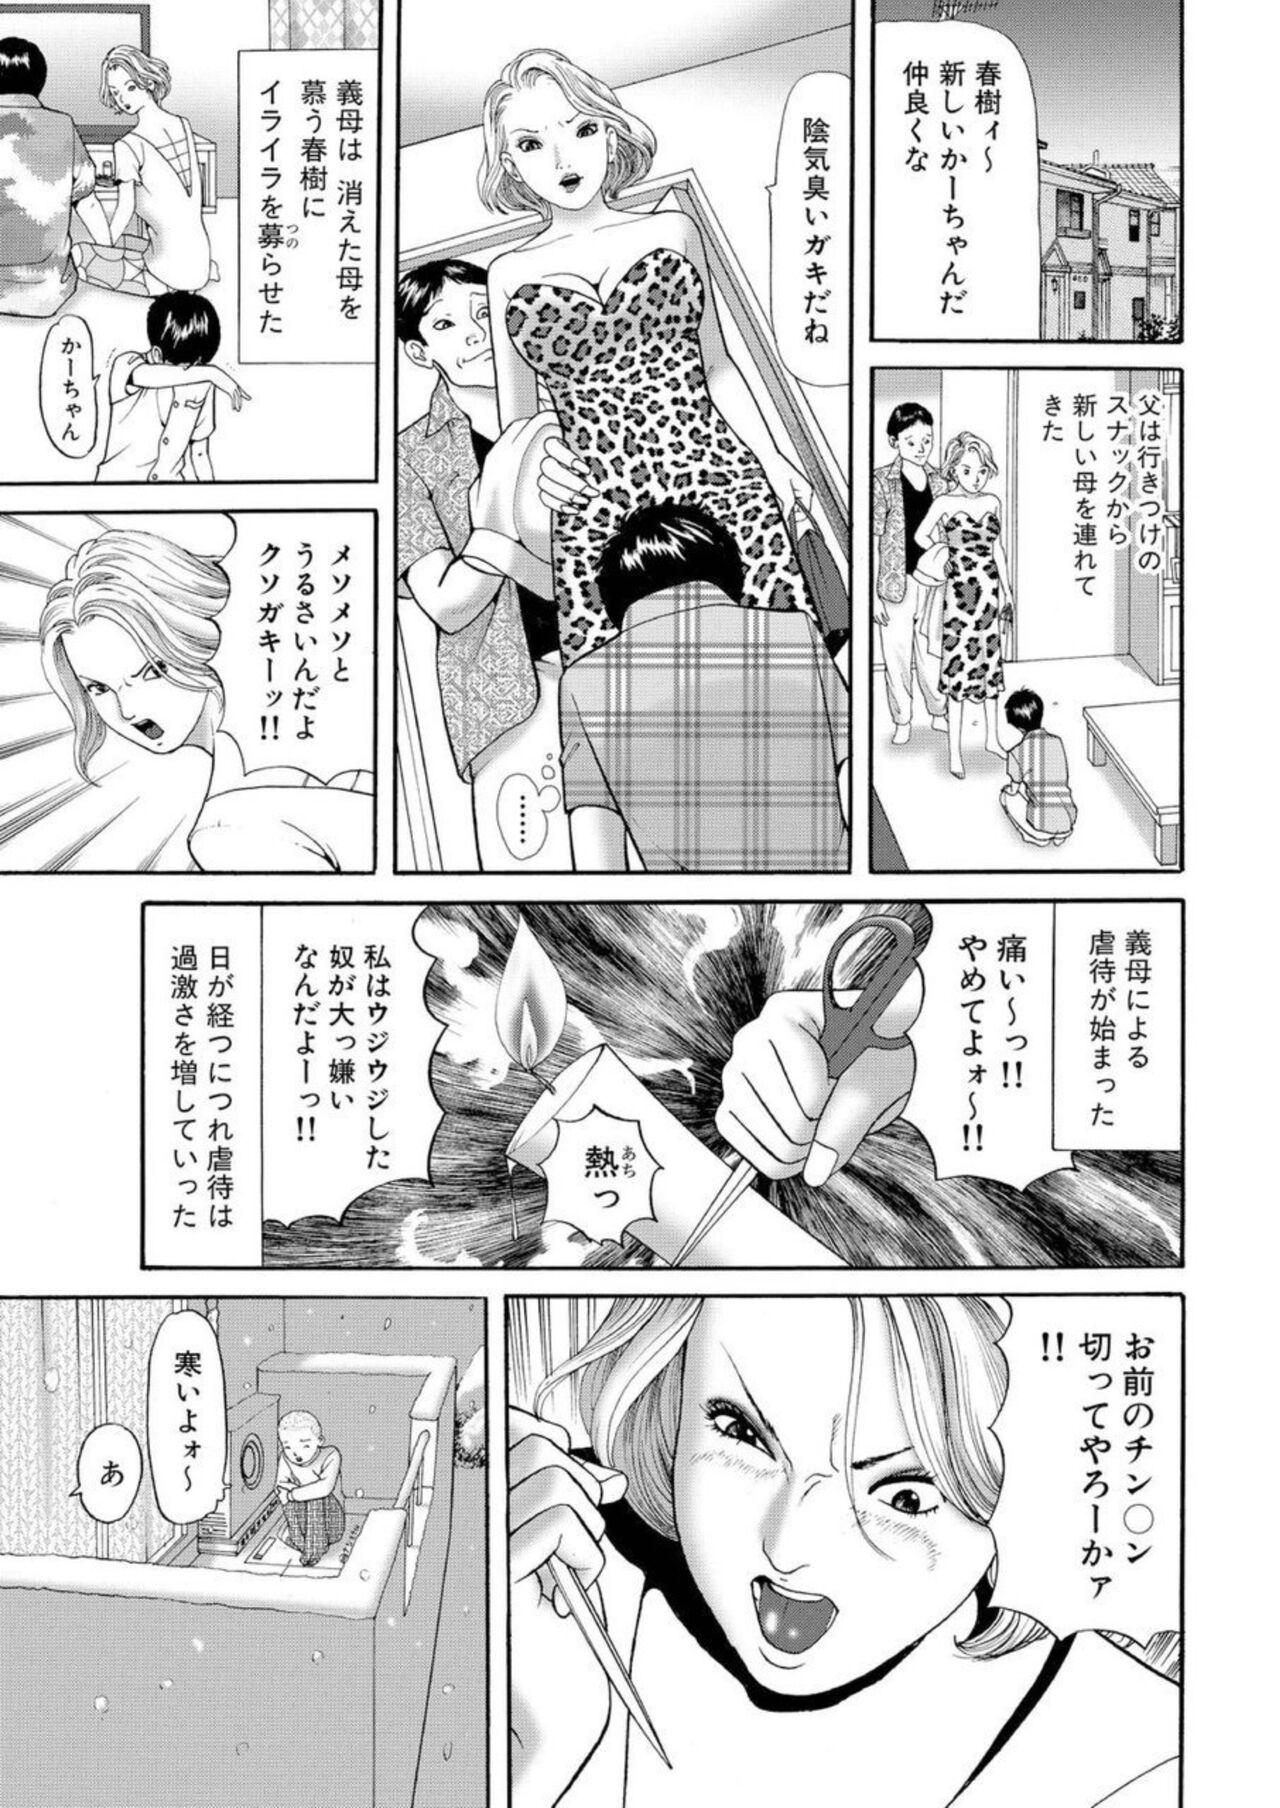 Boy Nyobon Jitsuroku Rape Saiban 1 Cheating - Page 4